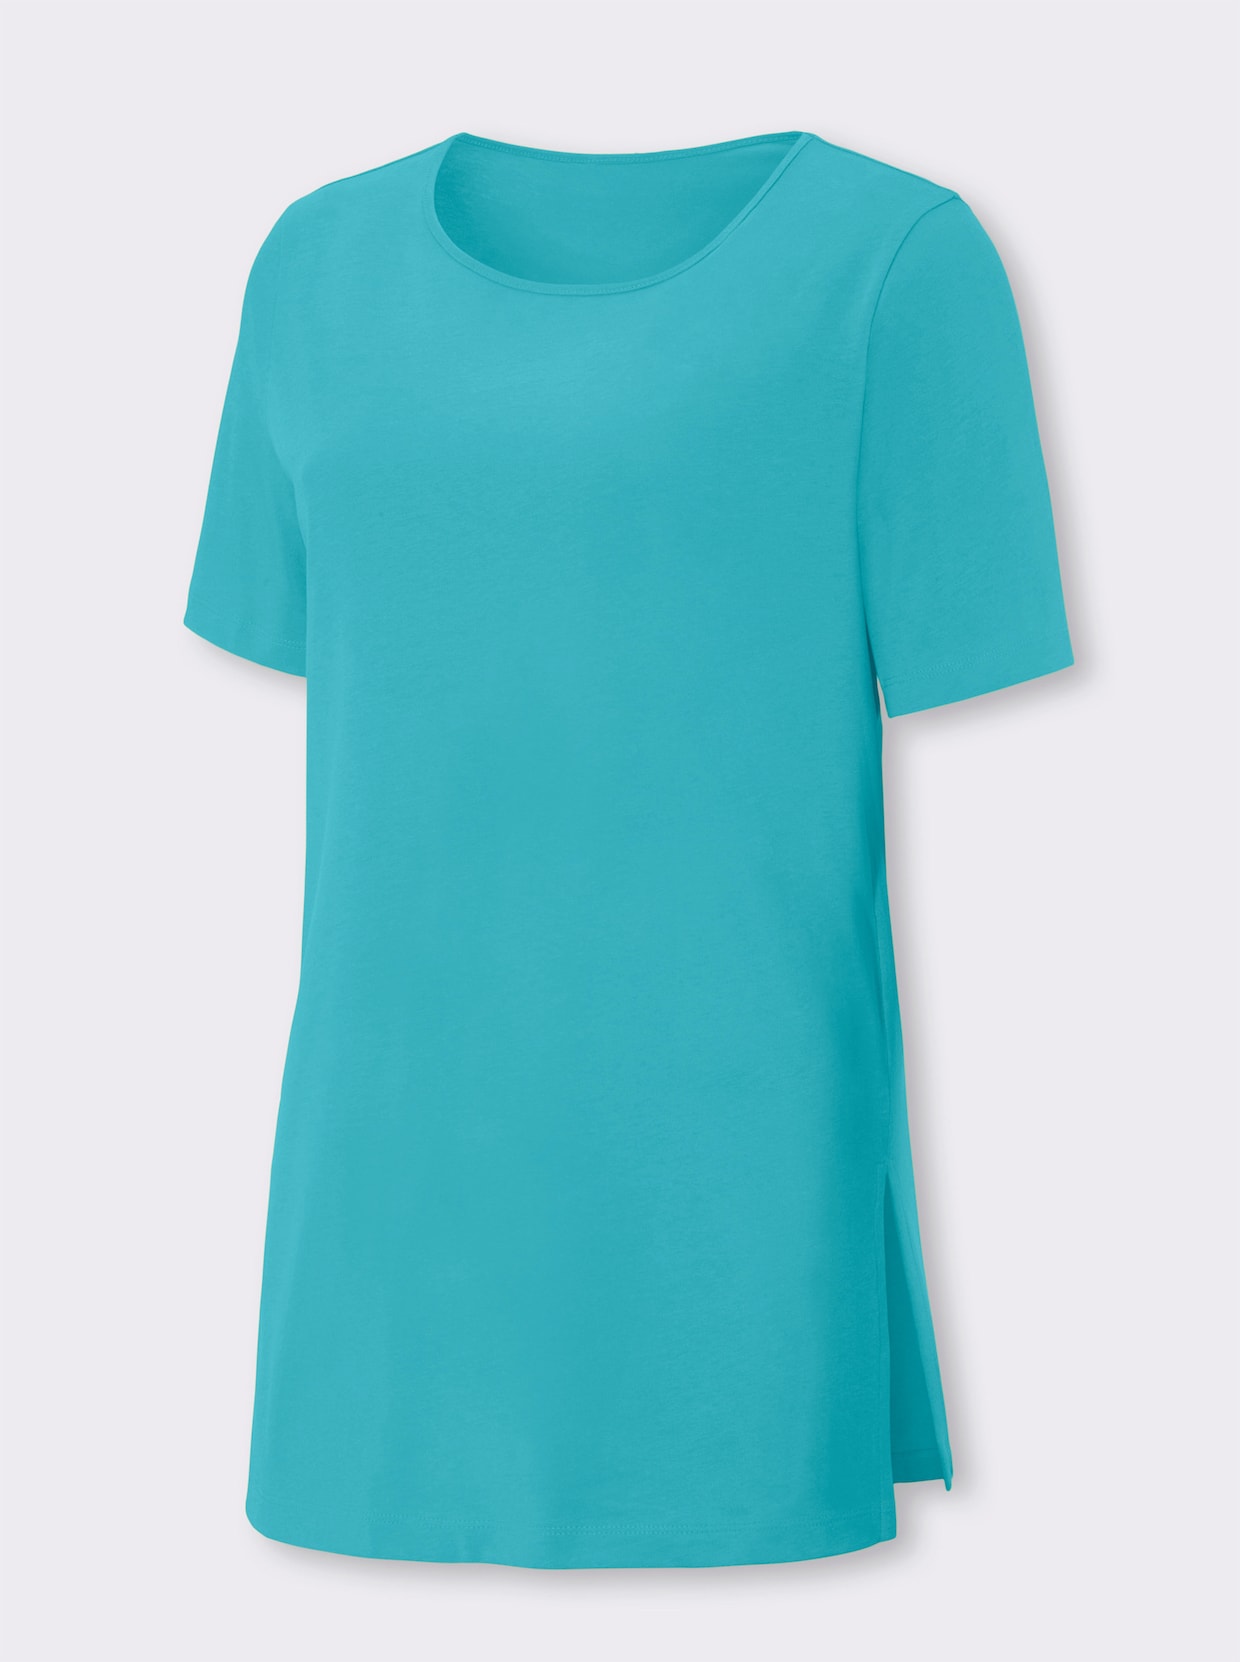 Lang shirt - turquoise